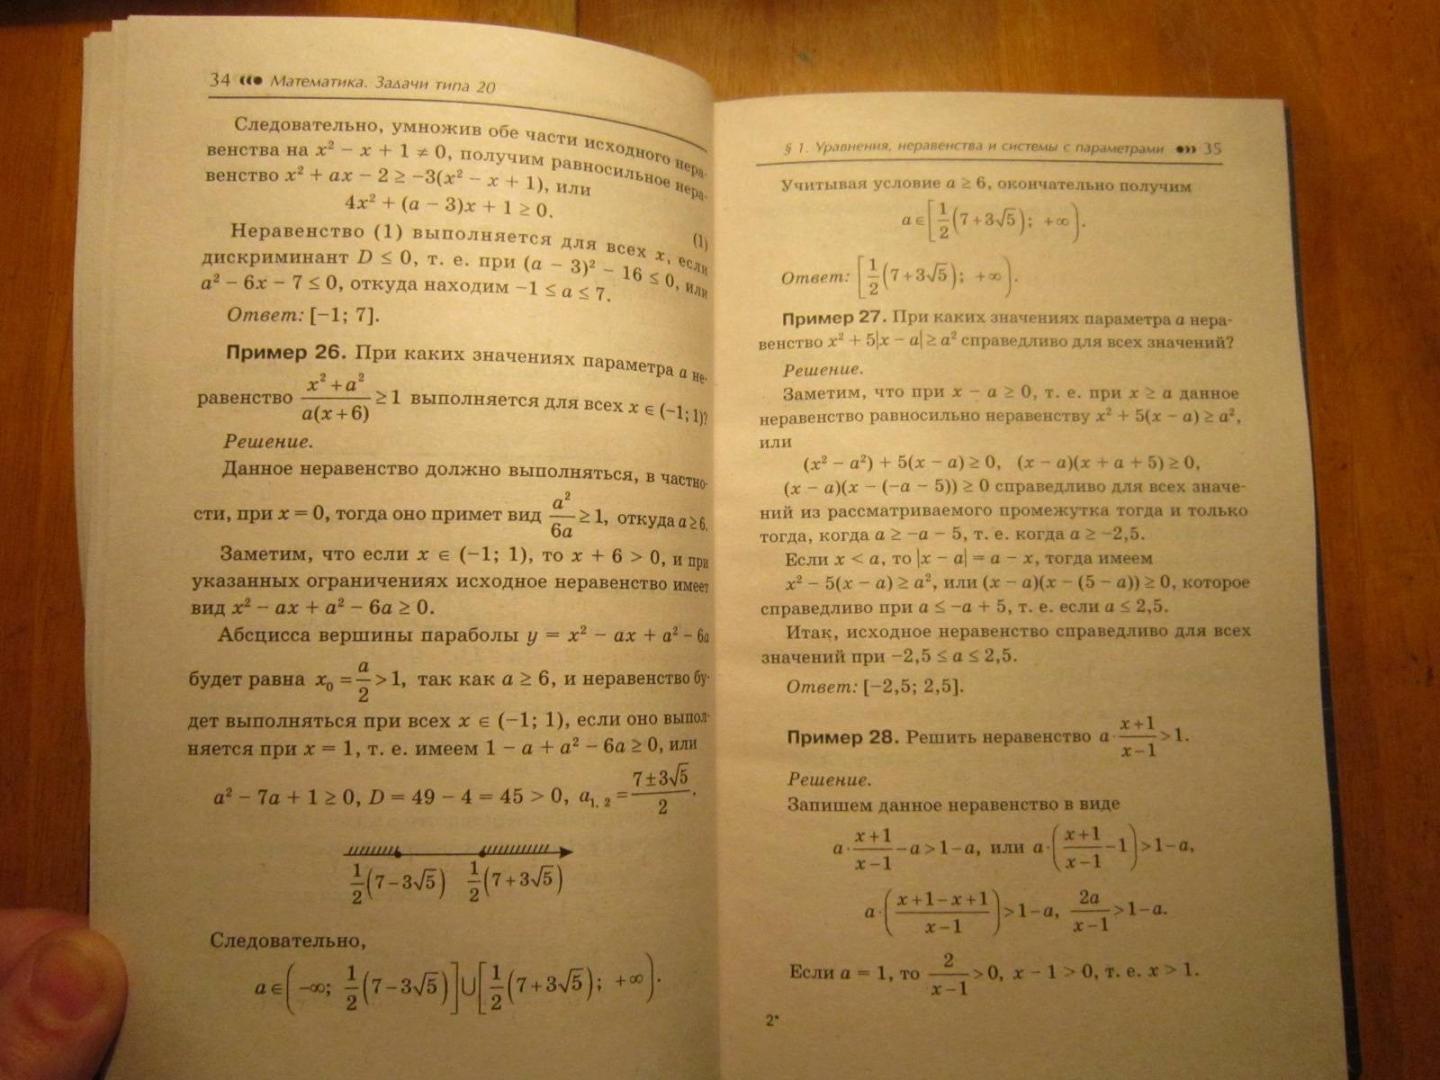 Иллюстрация 22 из 22 для Математика. Задачи типа 20. Уравнения, неравенства и системы с параметром - Эдуард Балаян | Лабиринт - книги. Источник: Ермакова Юлия